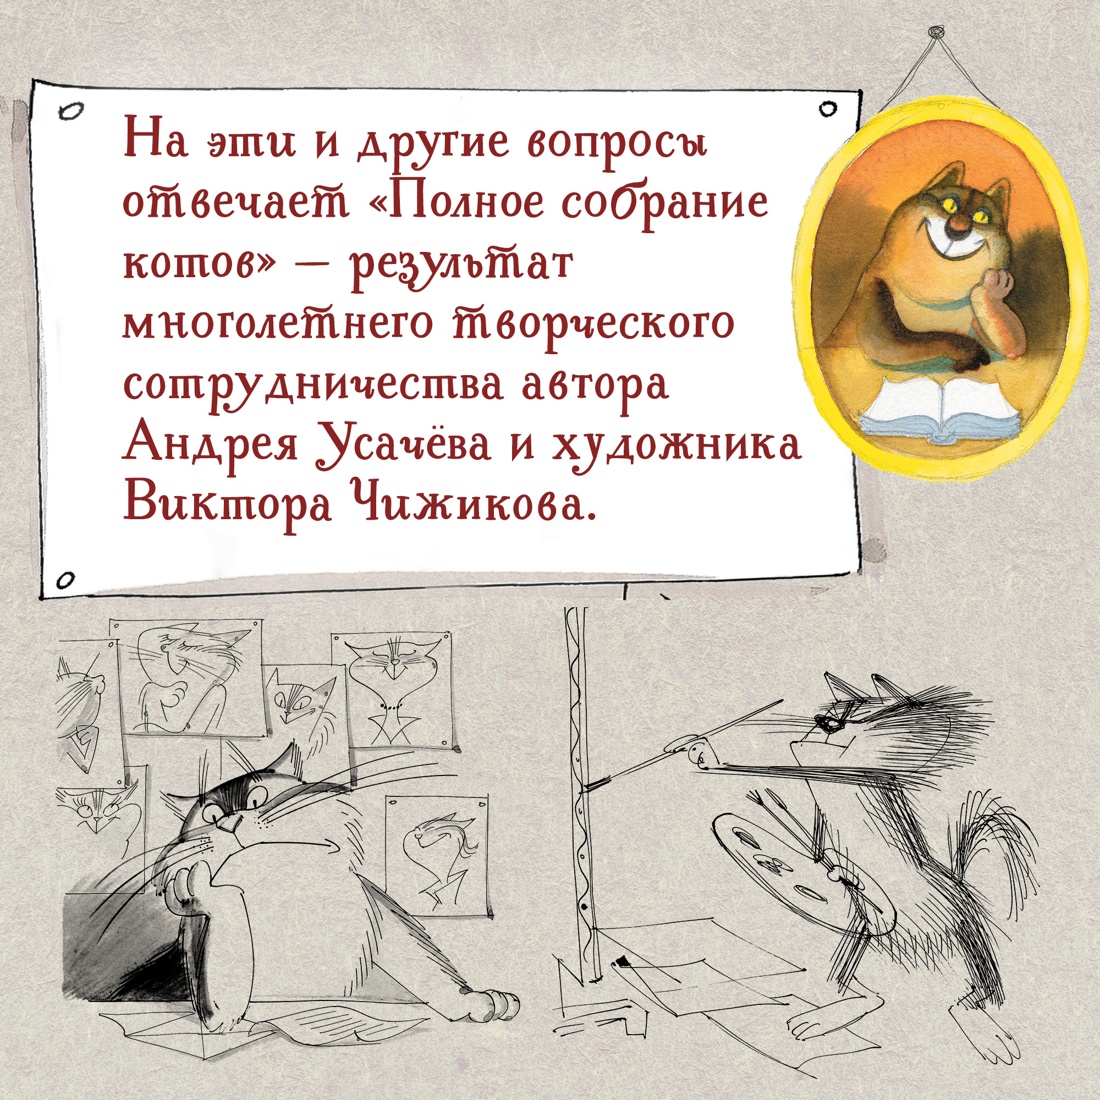 Промо материал к книге "Полное собрание котов" №3